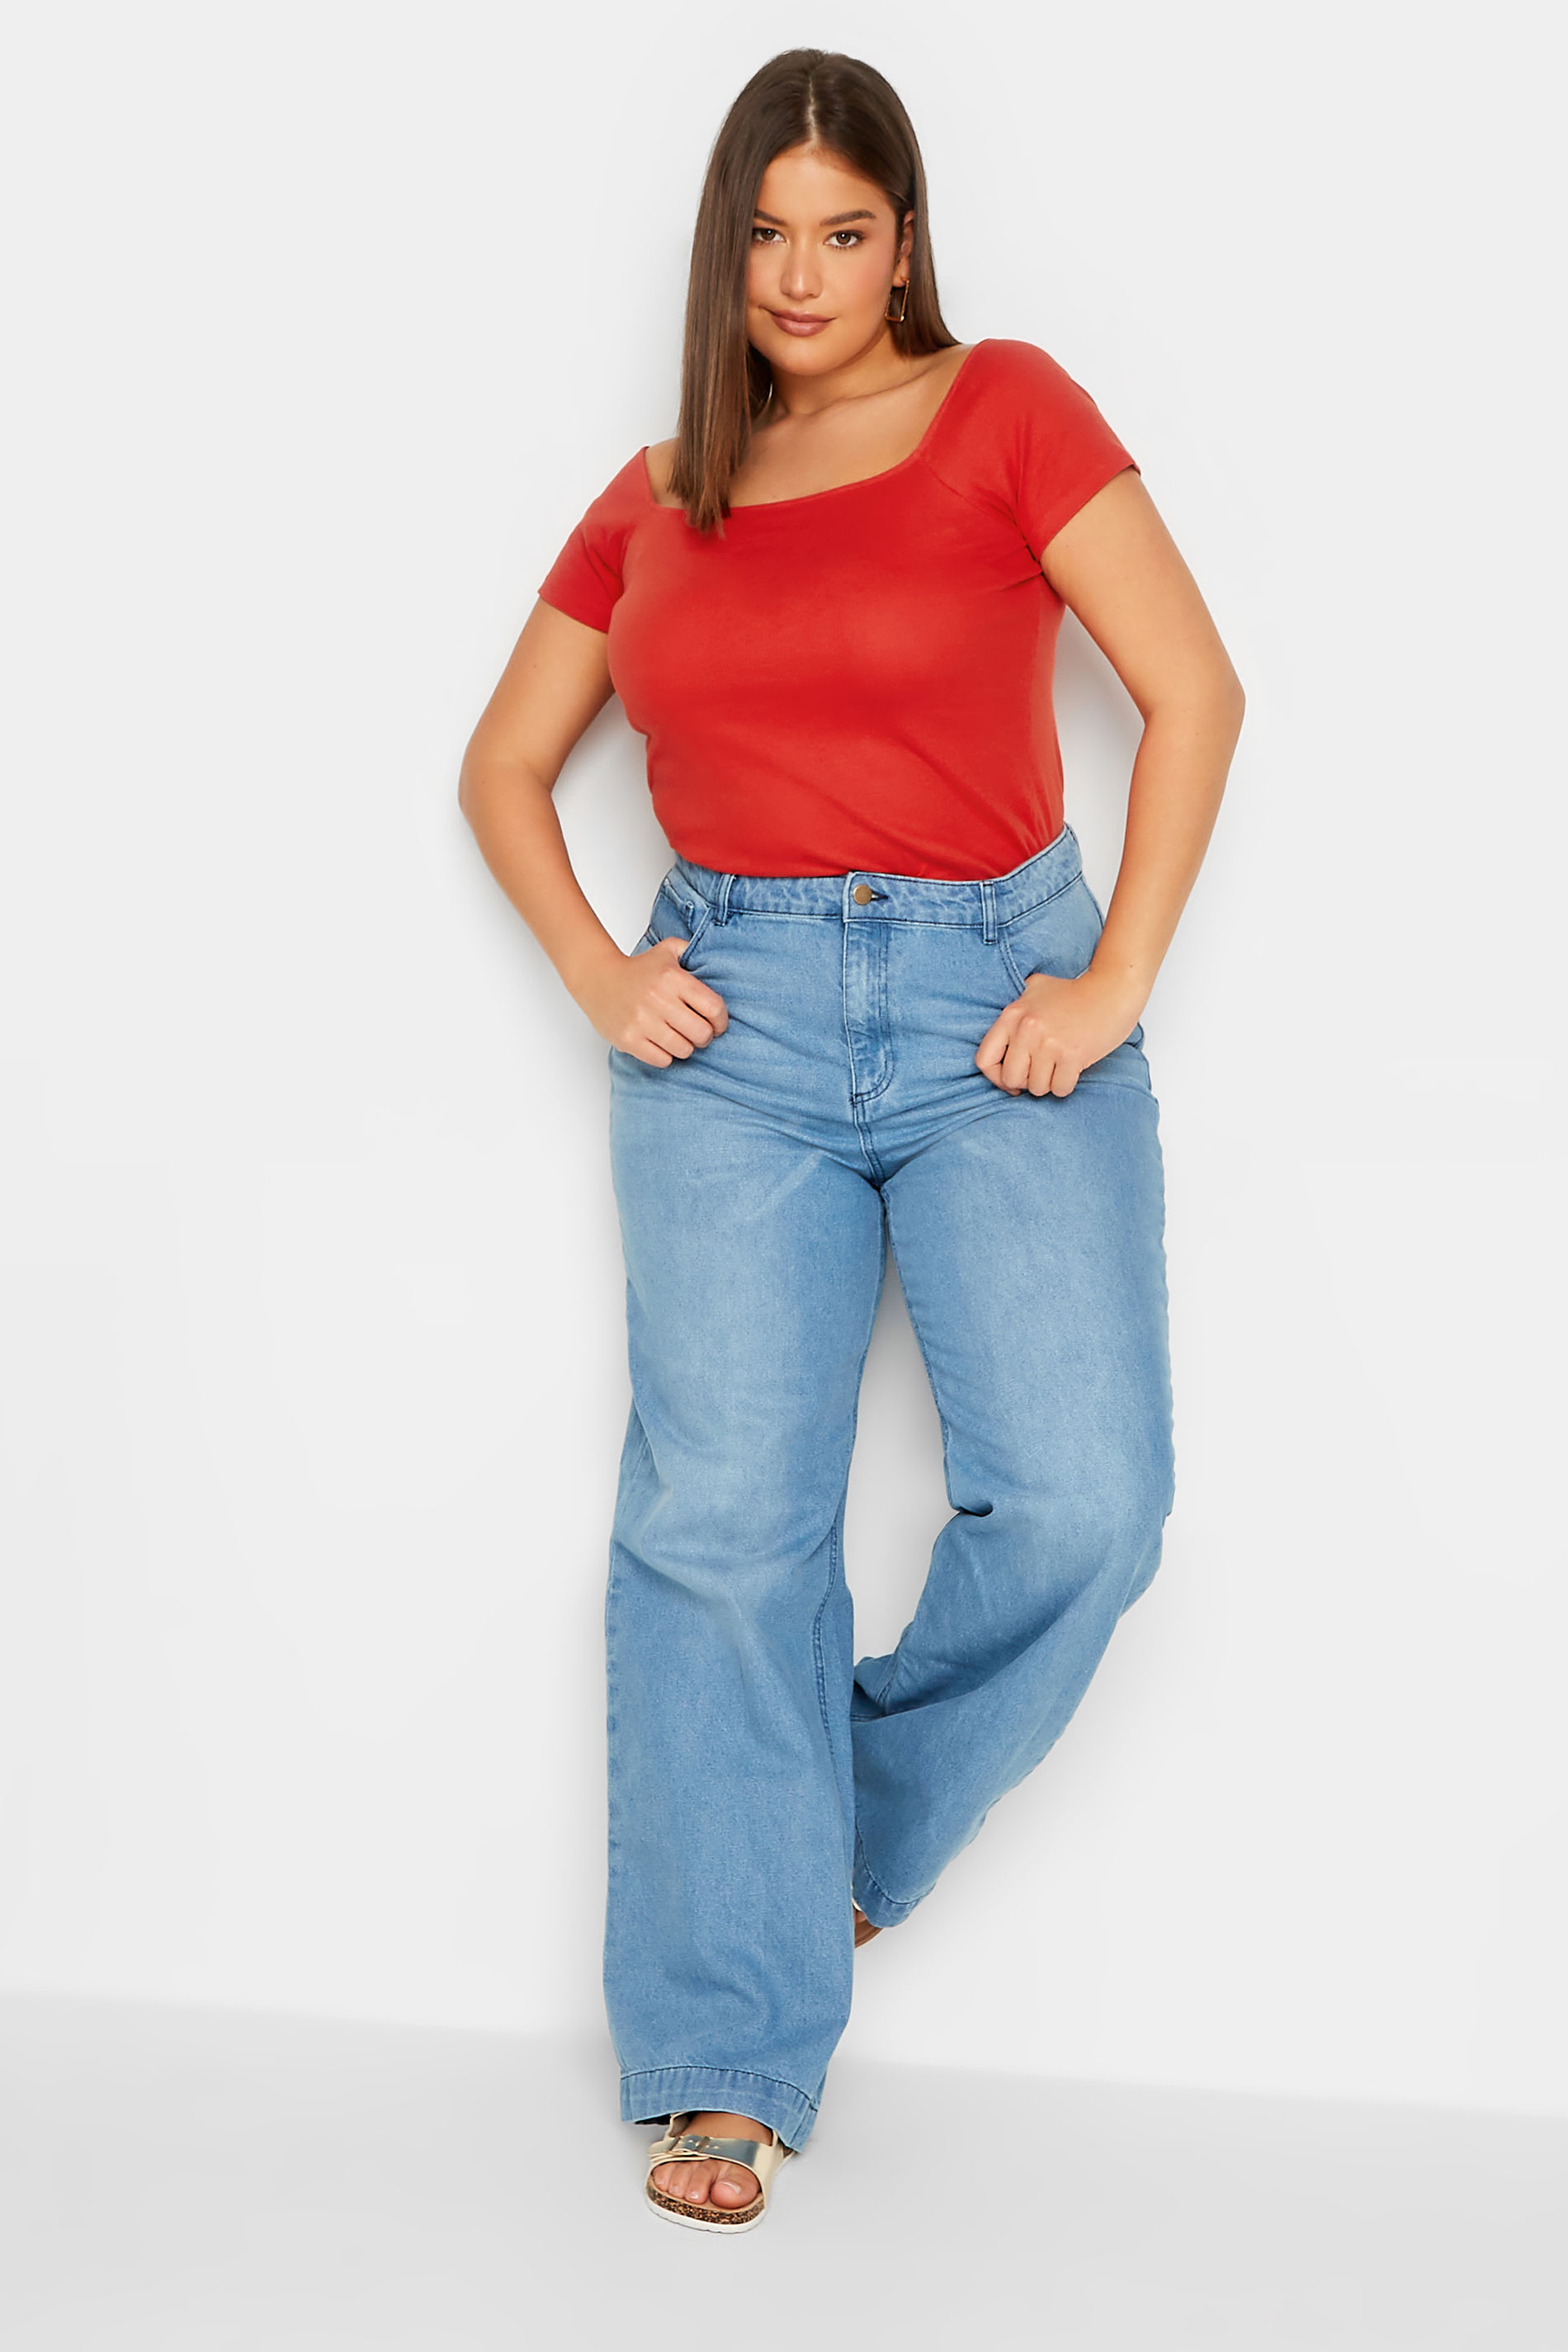 LTS Tall Women's Red Bardot Short Sleeve Top | Long Tall Sally 2